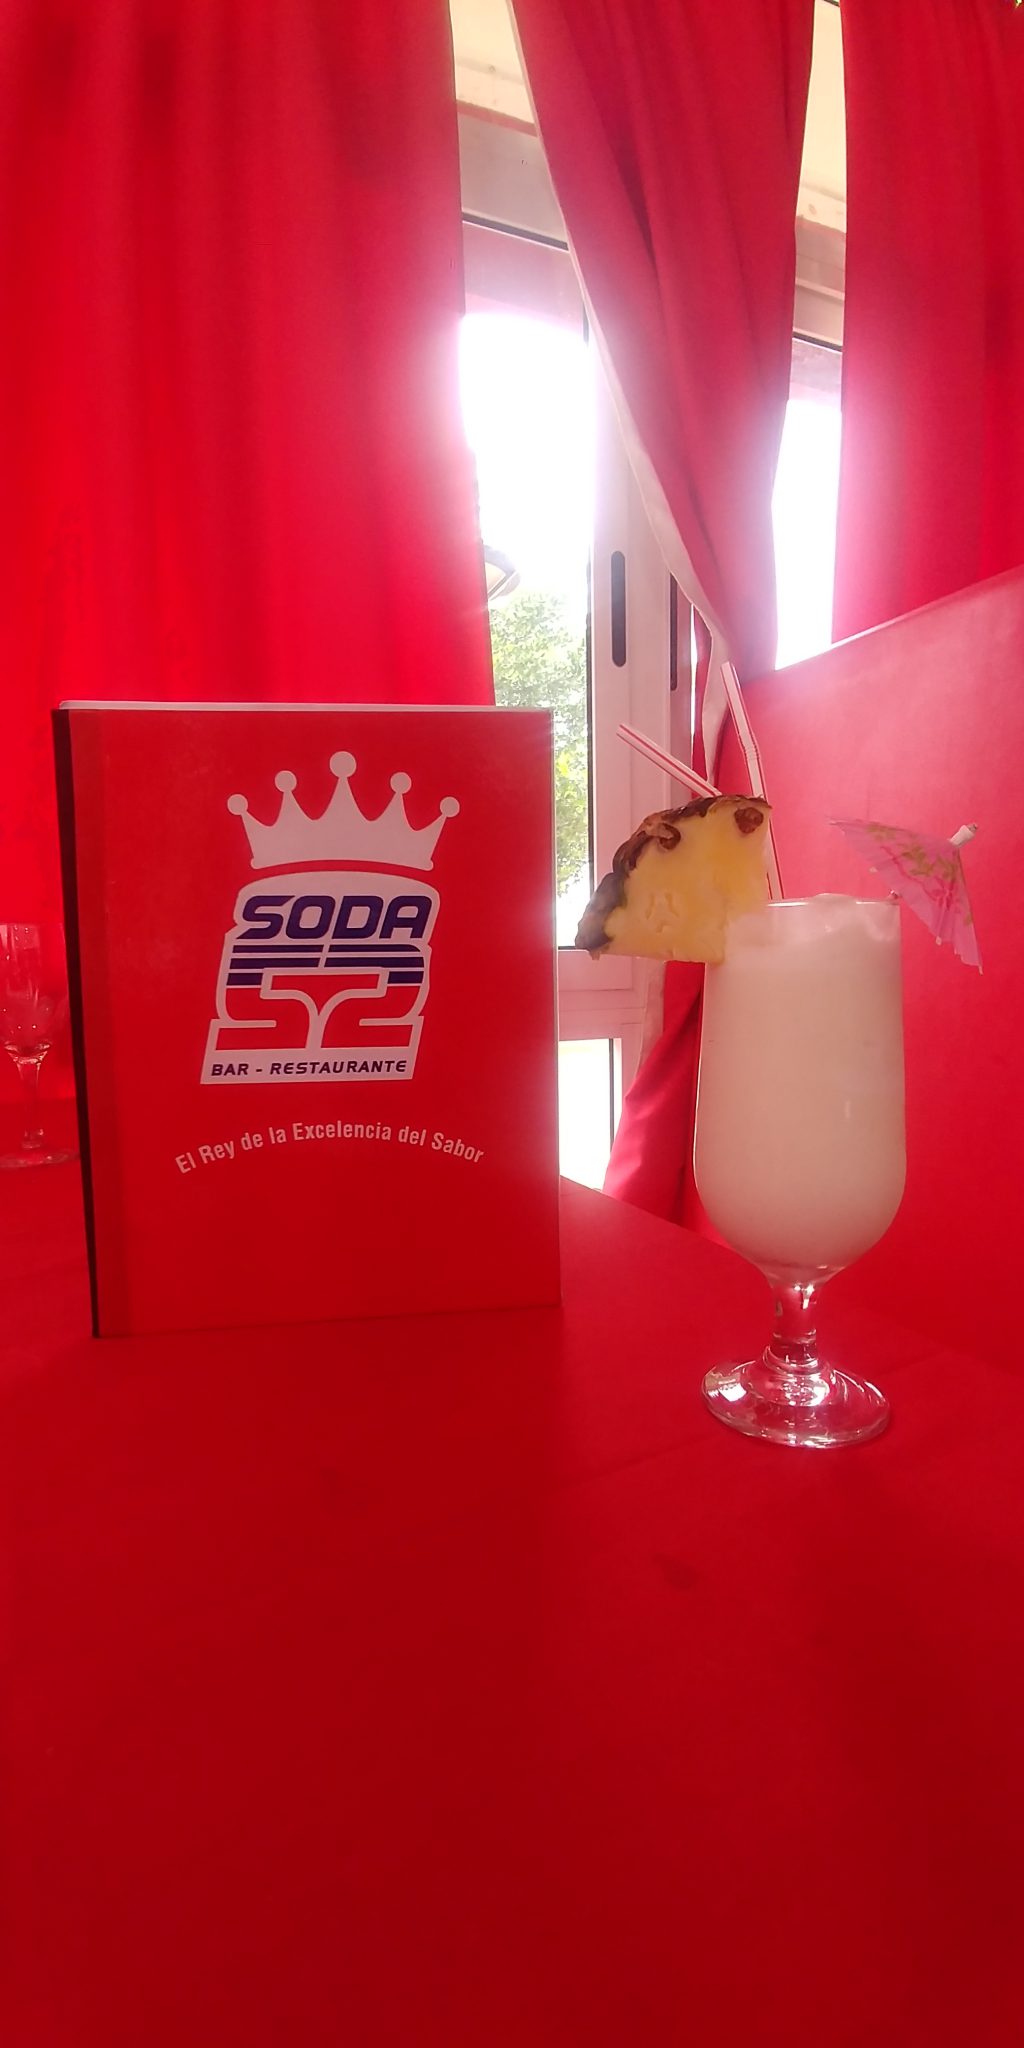 SODA 52: el rey de la excelencia del sabor.